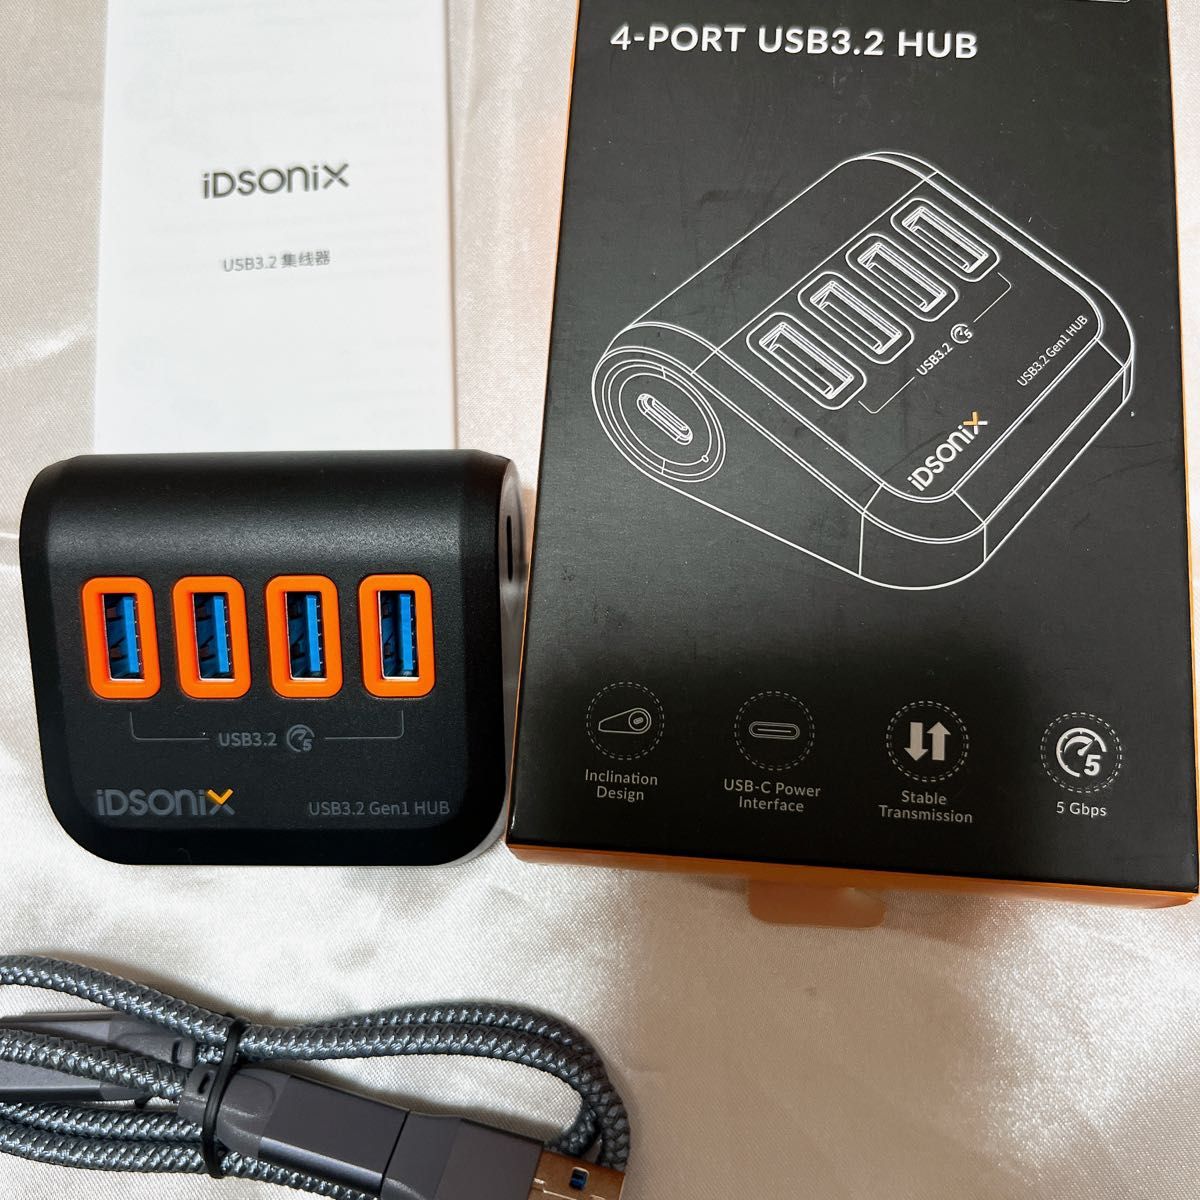 iDSOnix 4-PORT USB3.2 HUB